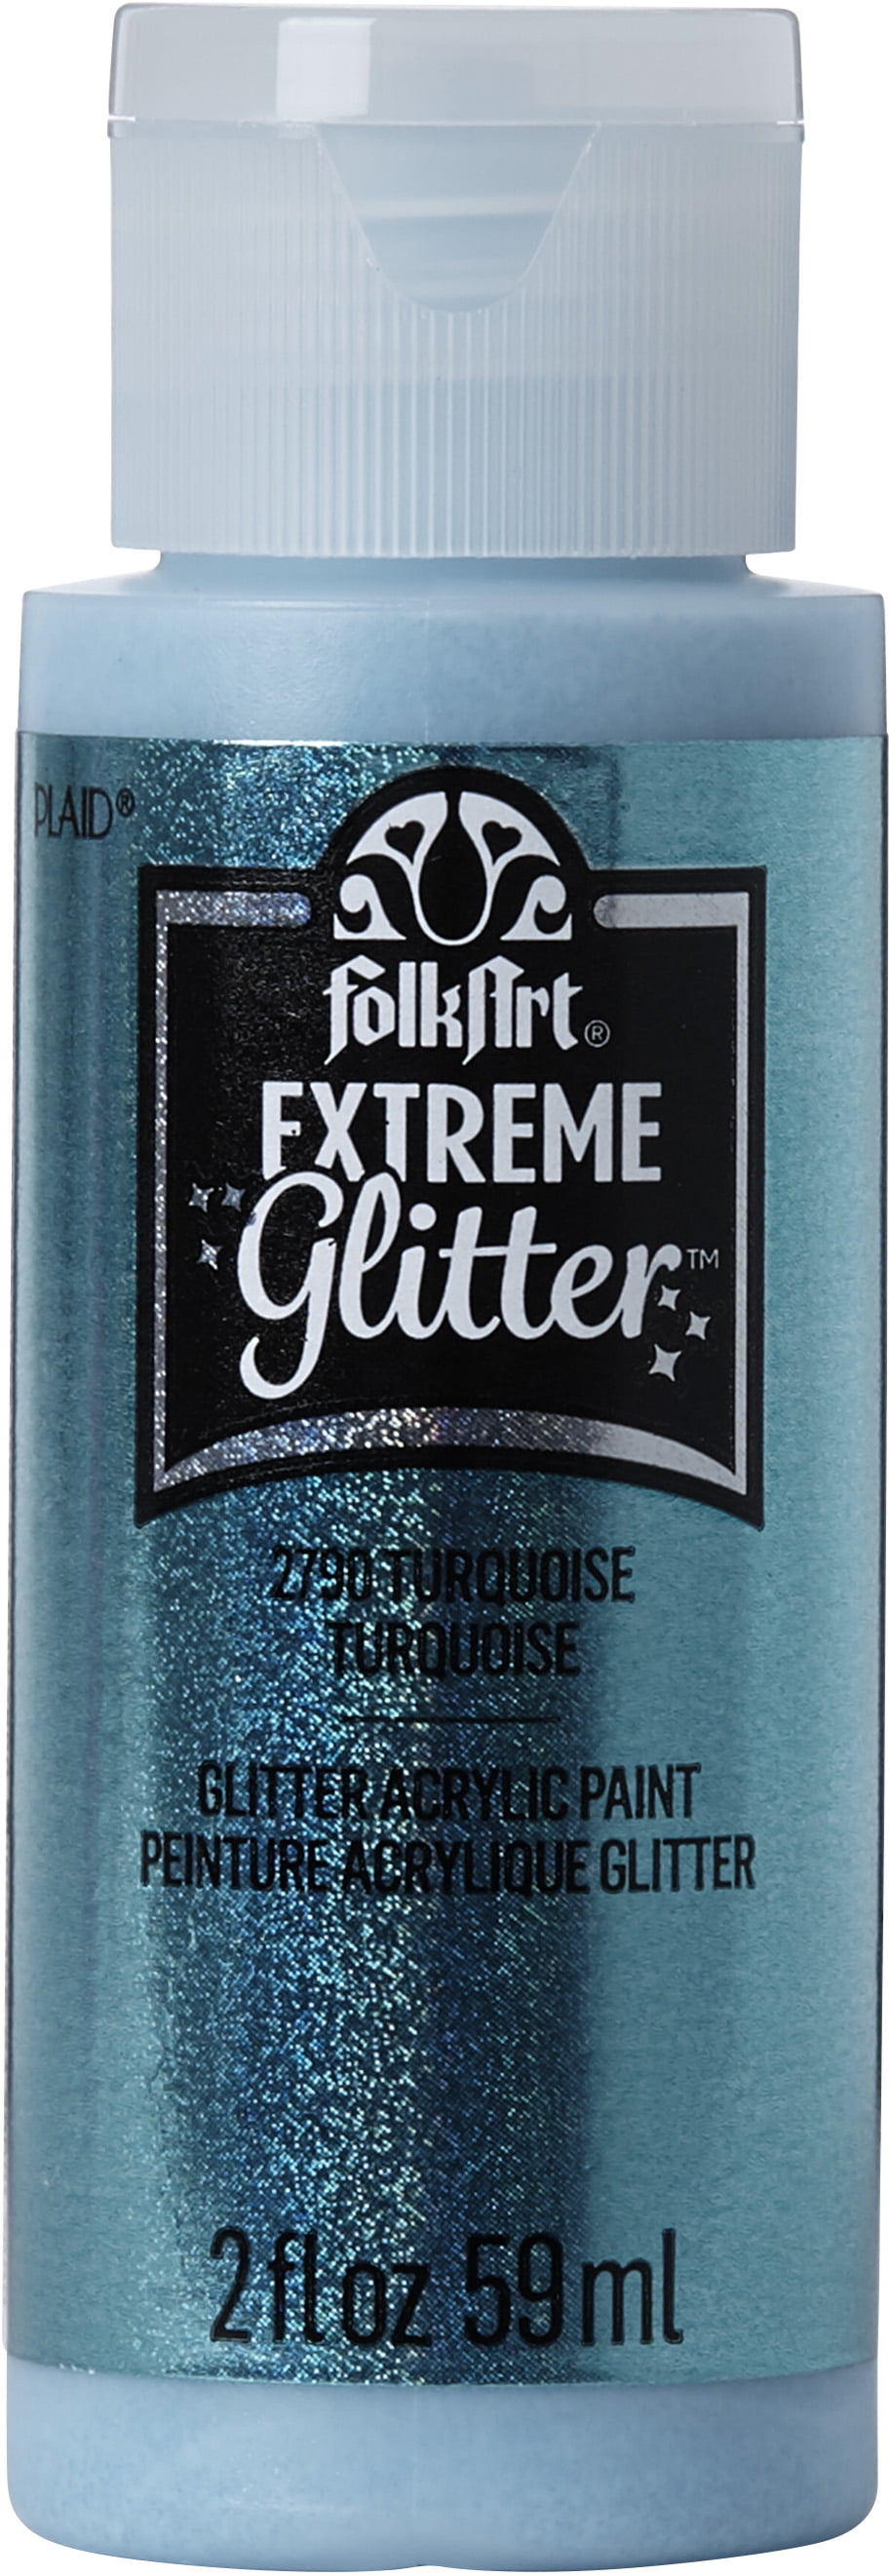 FolkArt Extreme Glitter Acrylic Craft Paint, Glitter Finish, Turquoise, 2 fl oz